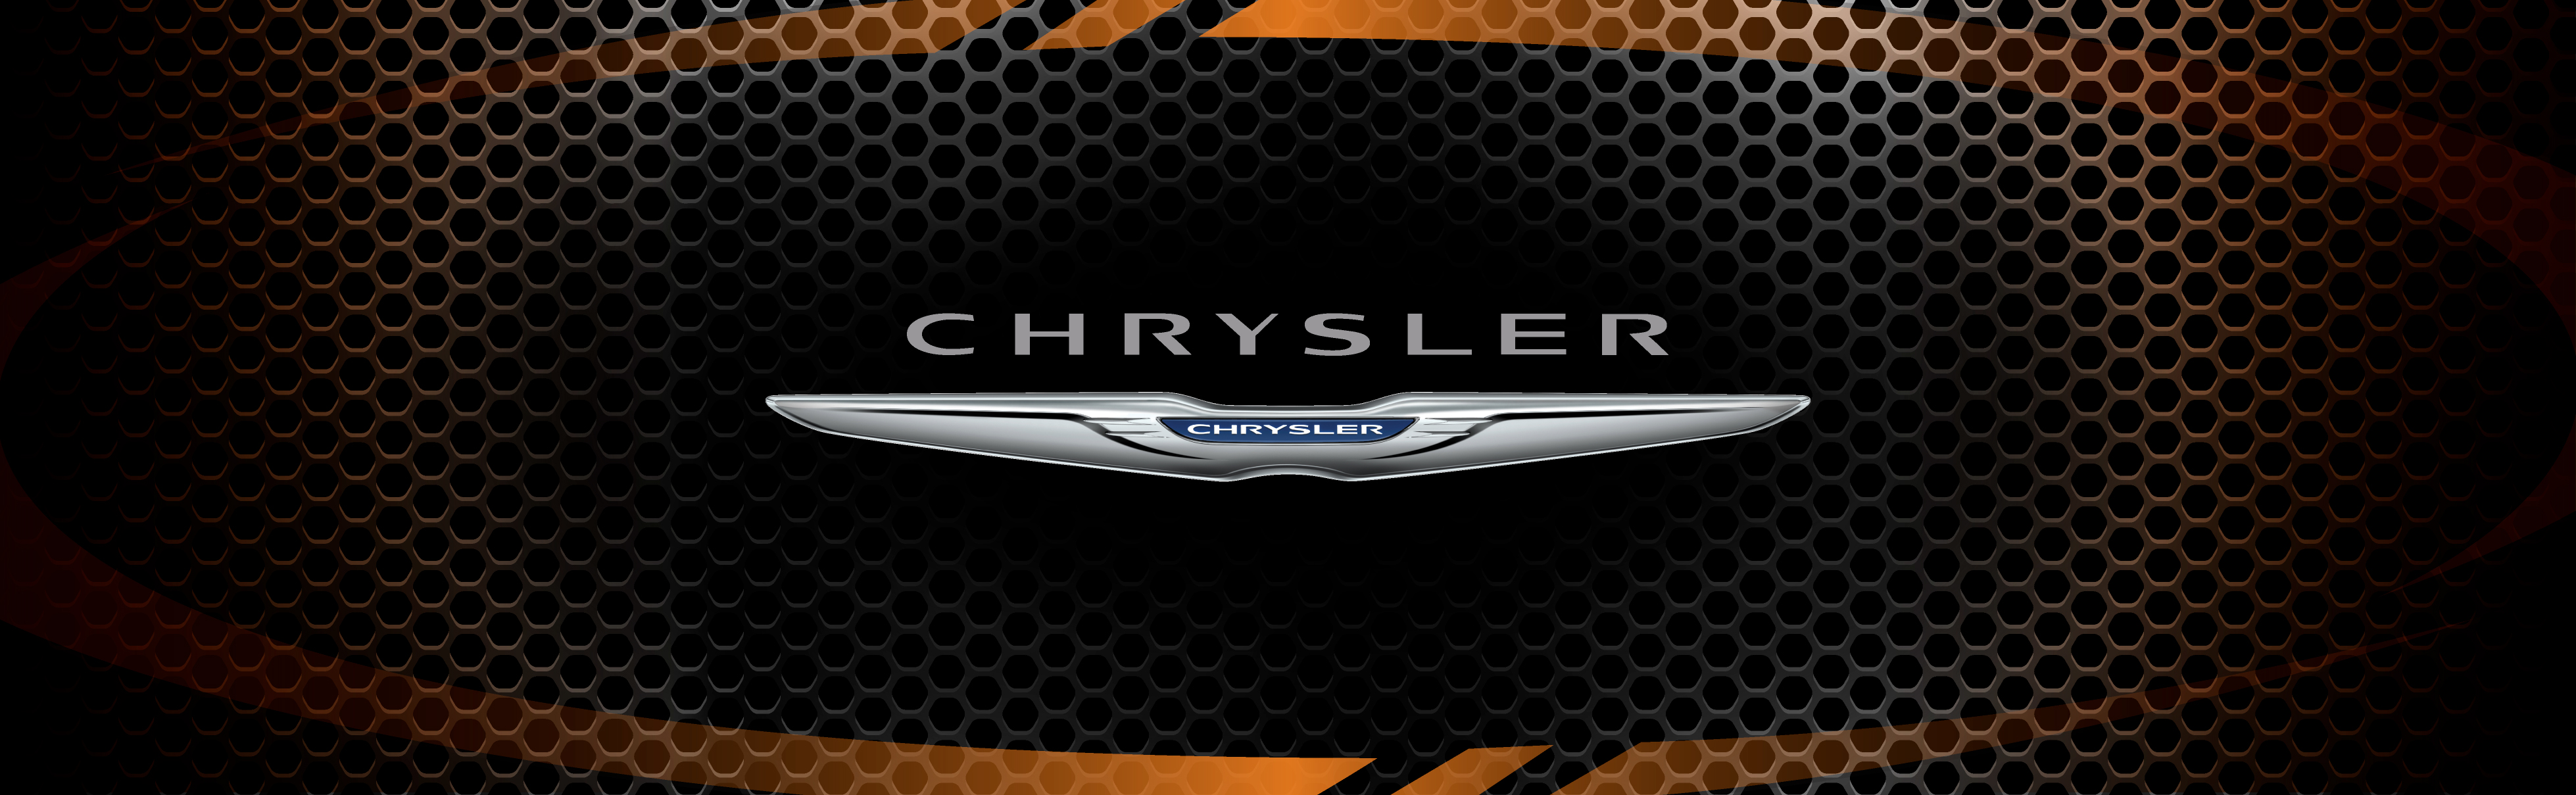 Grinnell Chrysler